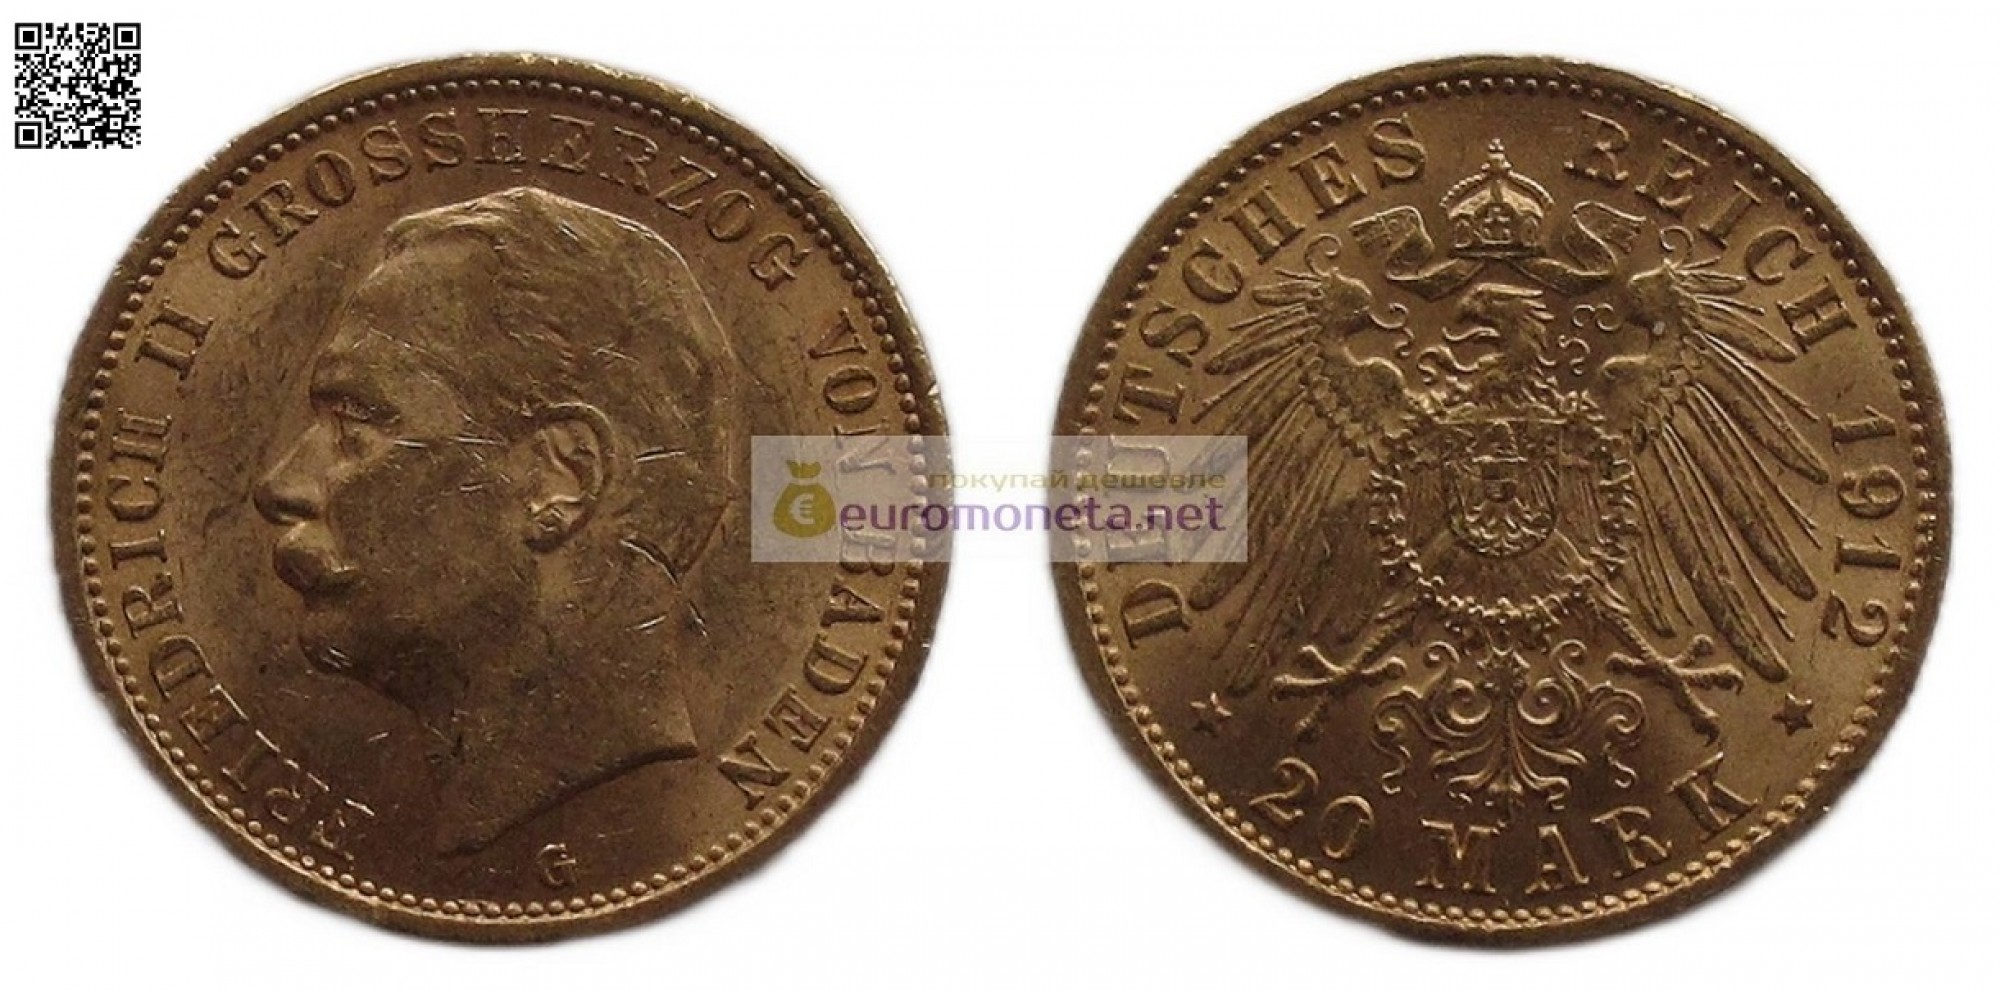 Германская империя Баден 20 марок 1912 год "G" Фридрих II. Золото